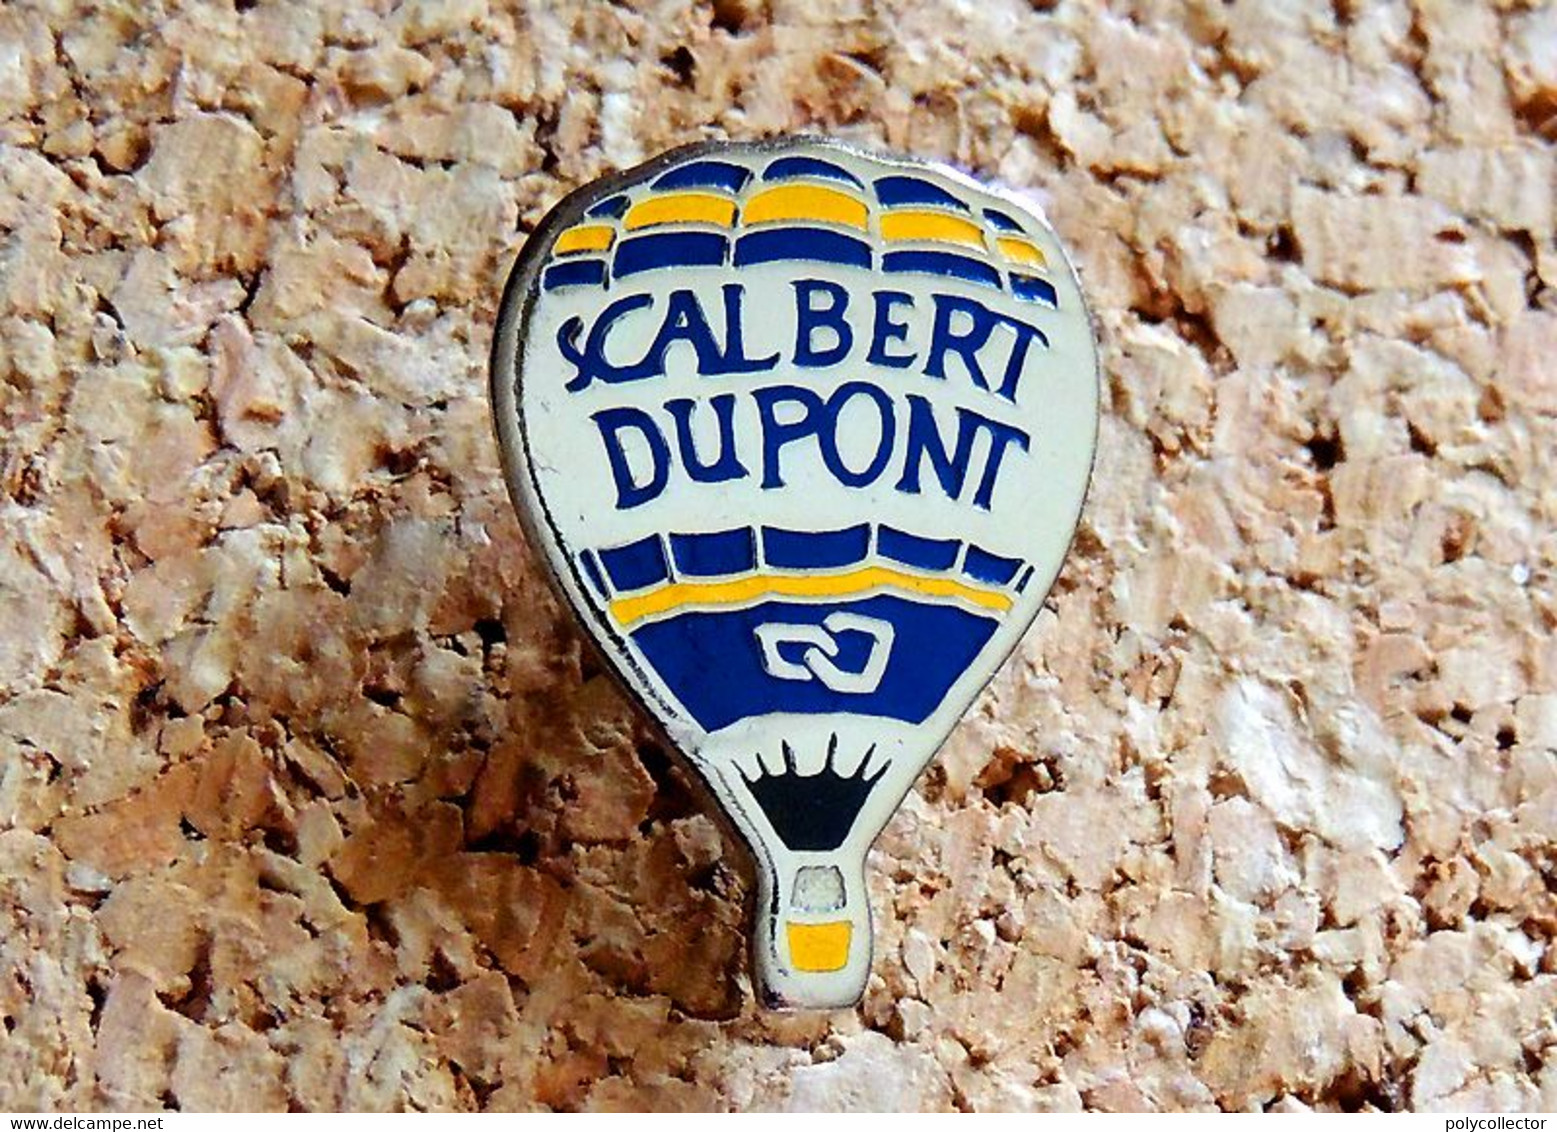 Pin's BALLON MONTGOLFIERE - Banque SCALBERT DUPONT - Peint Cloisonné - Fabricant Inconnu - Avions